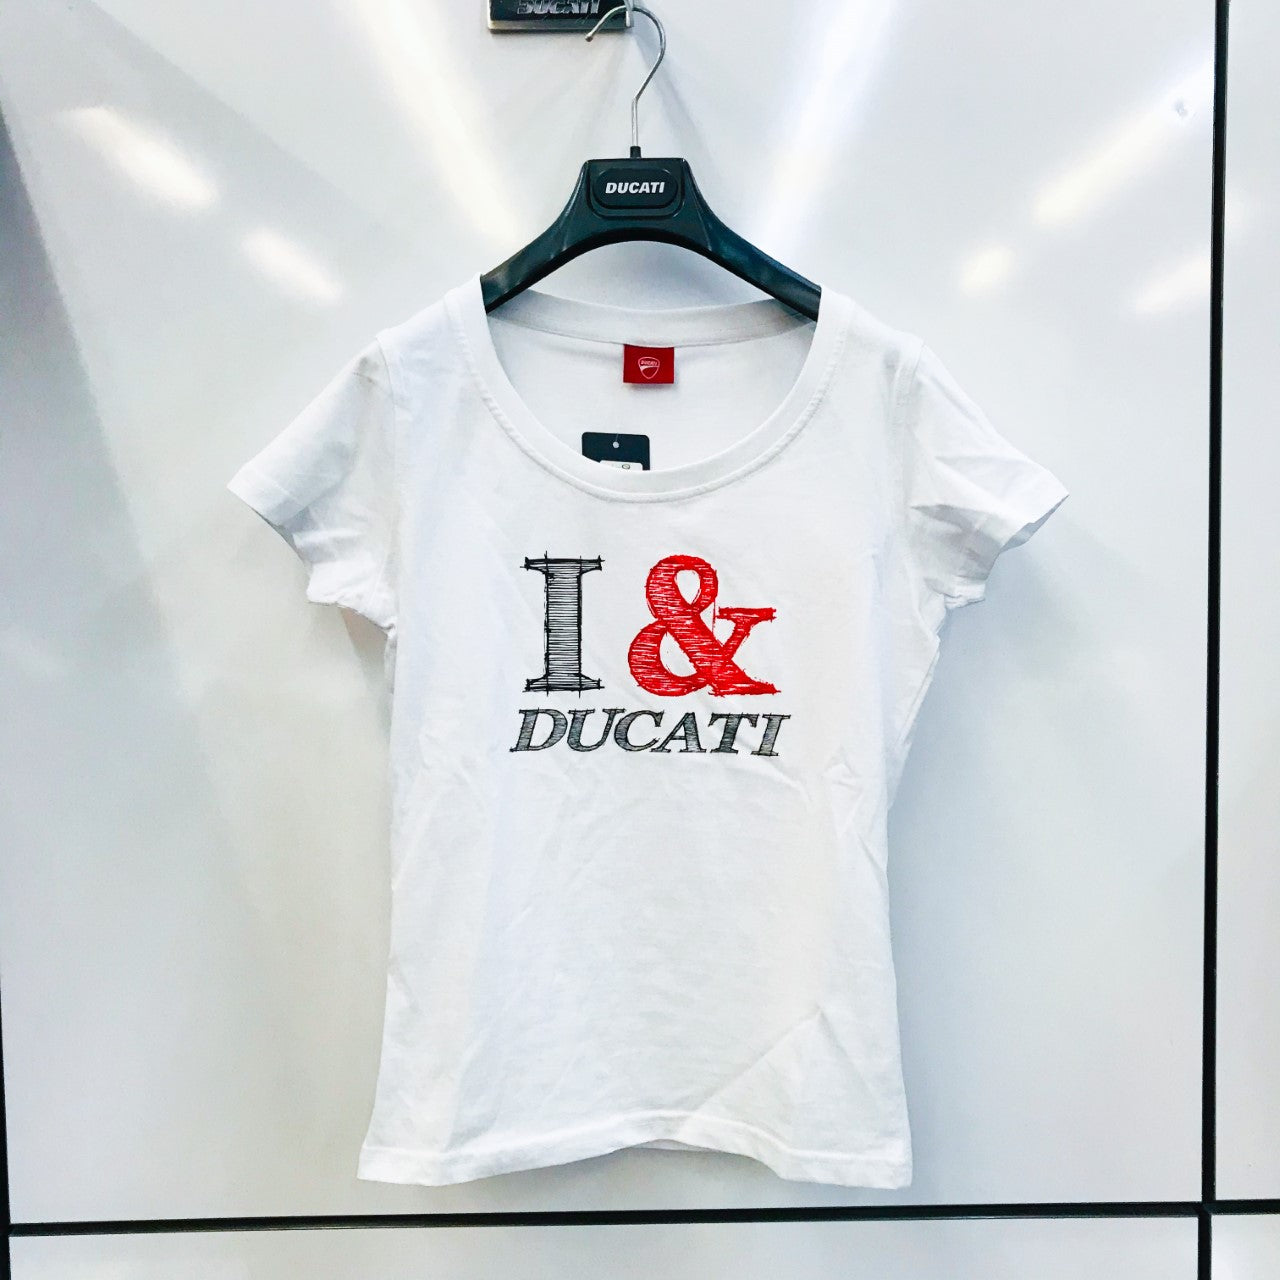 Ducati "I & Ducati" T-Shirt